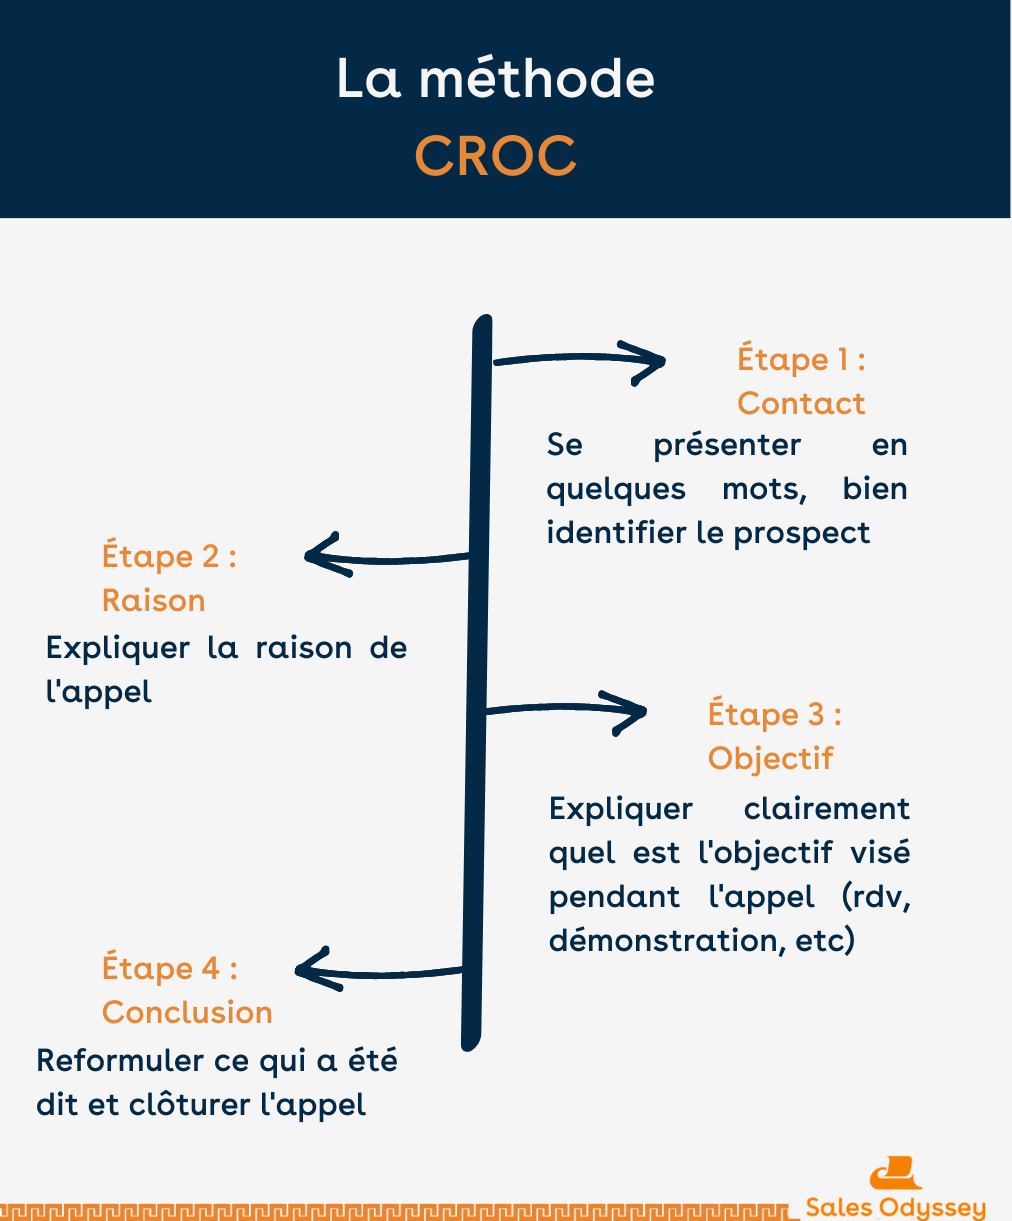 Les étapes de la méthode CROC